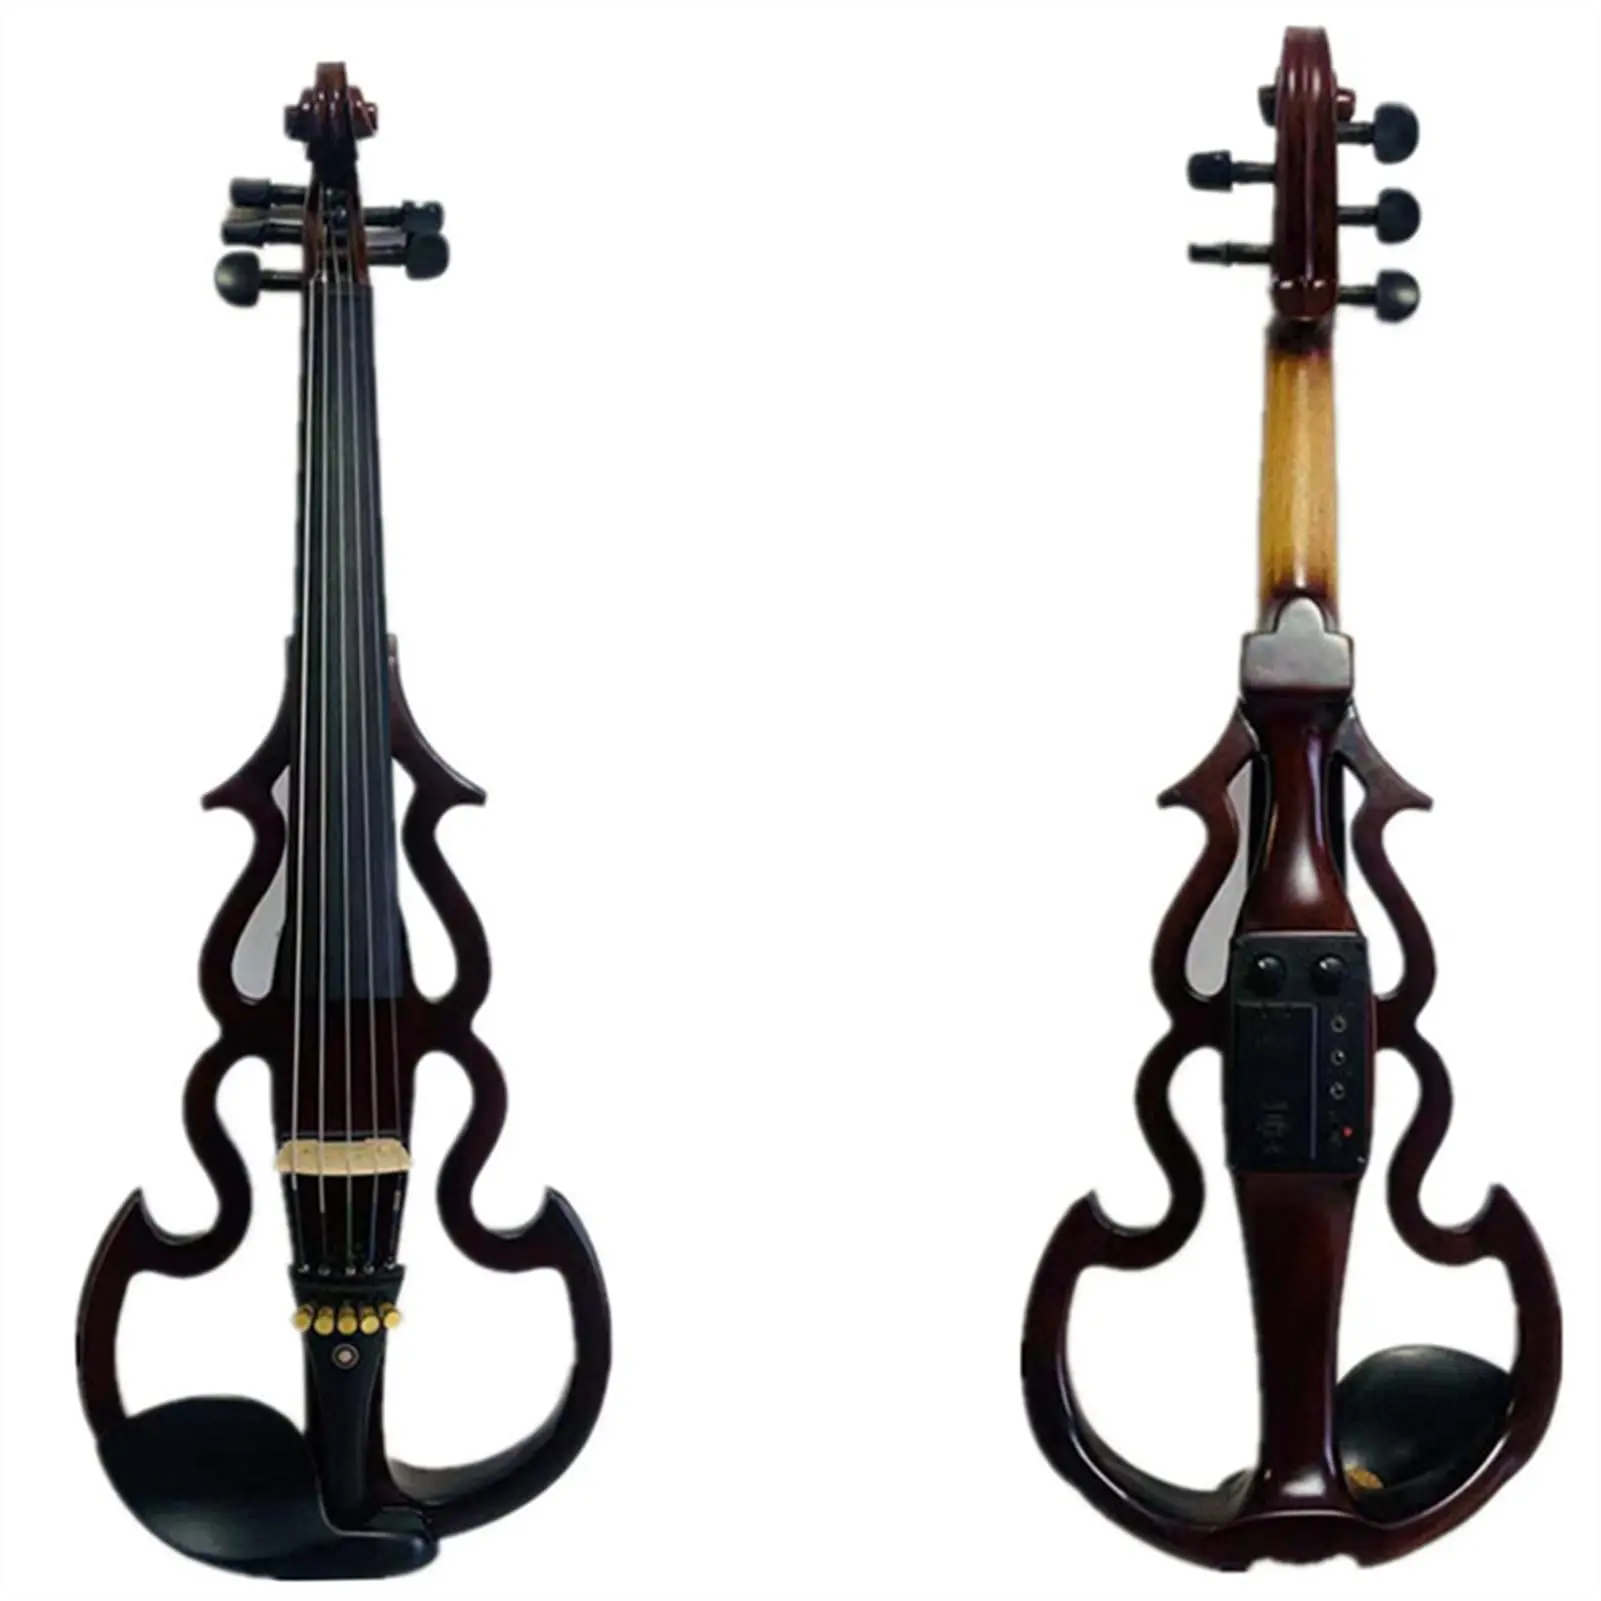 fabricacion de violin electrico - De qué están hechos los violines eléctricos